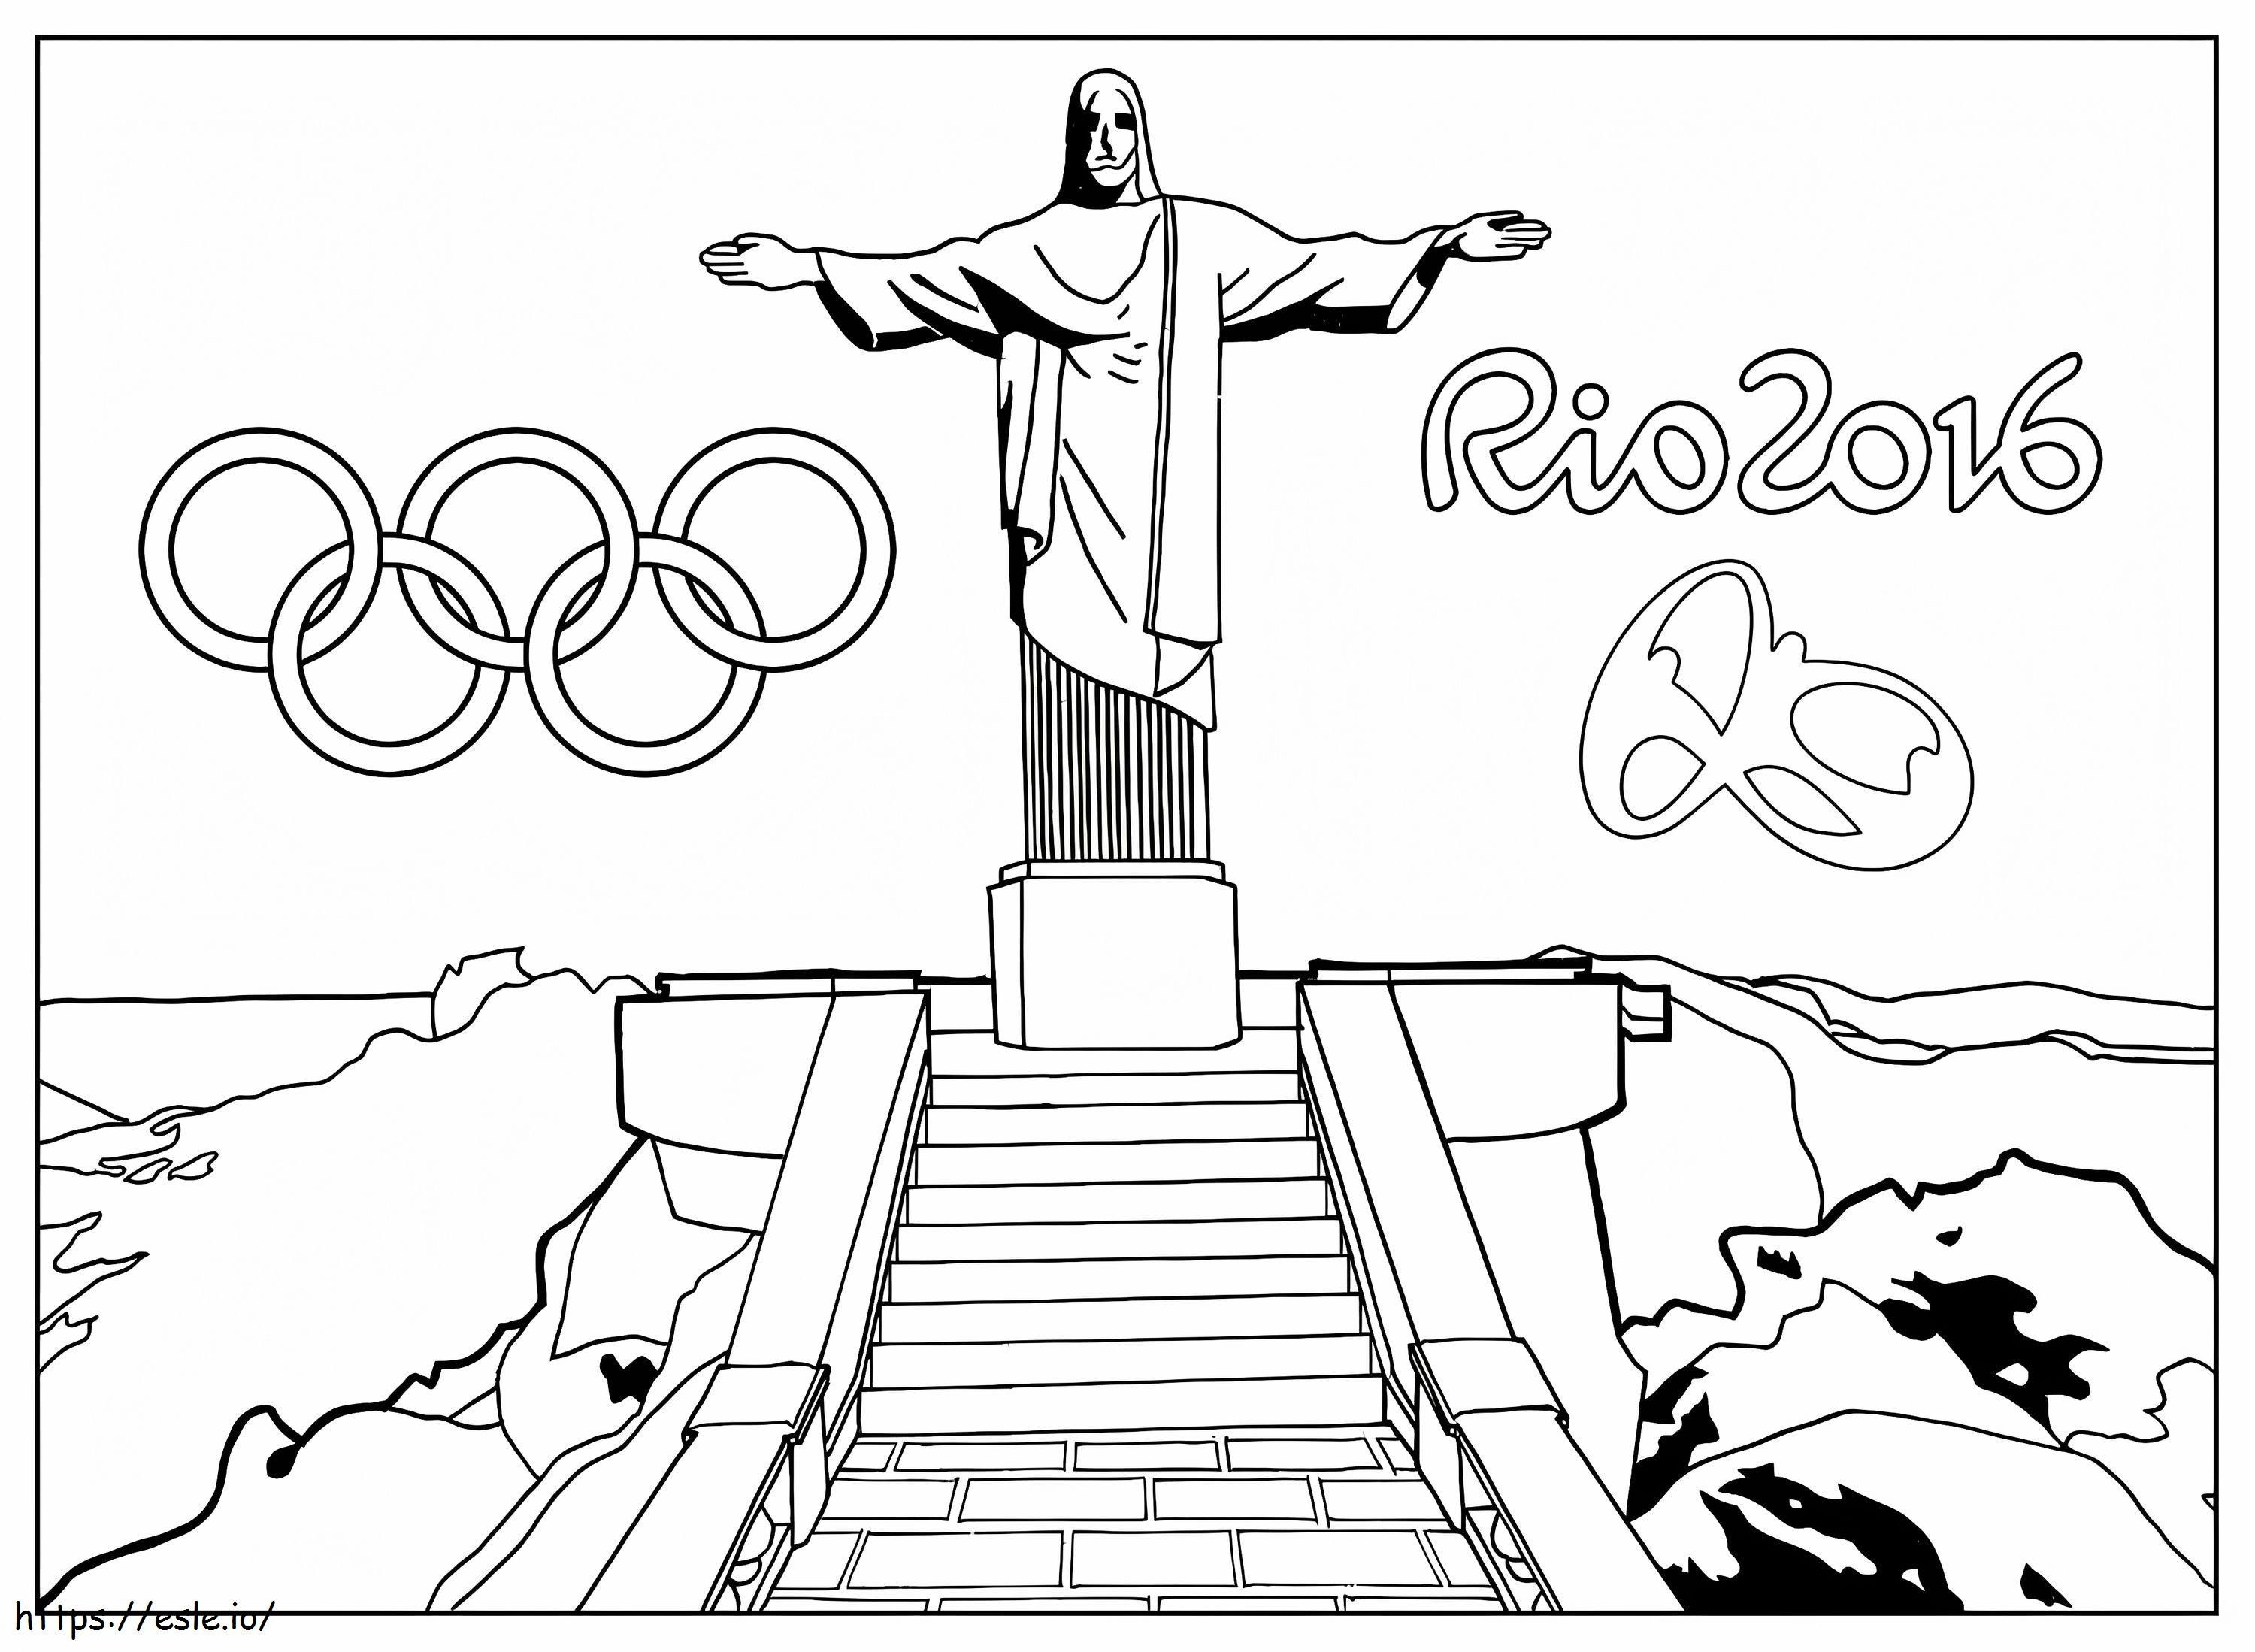 Rio 2016 boyama